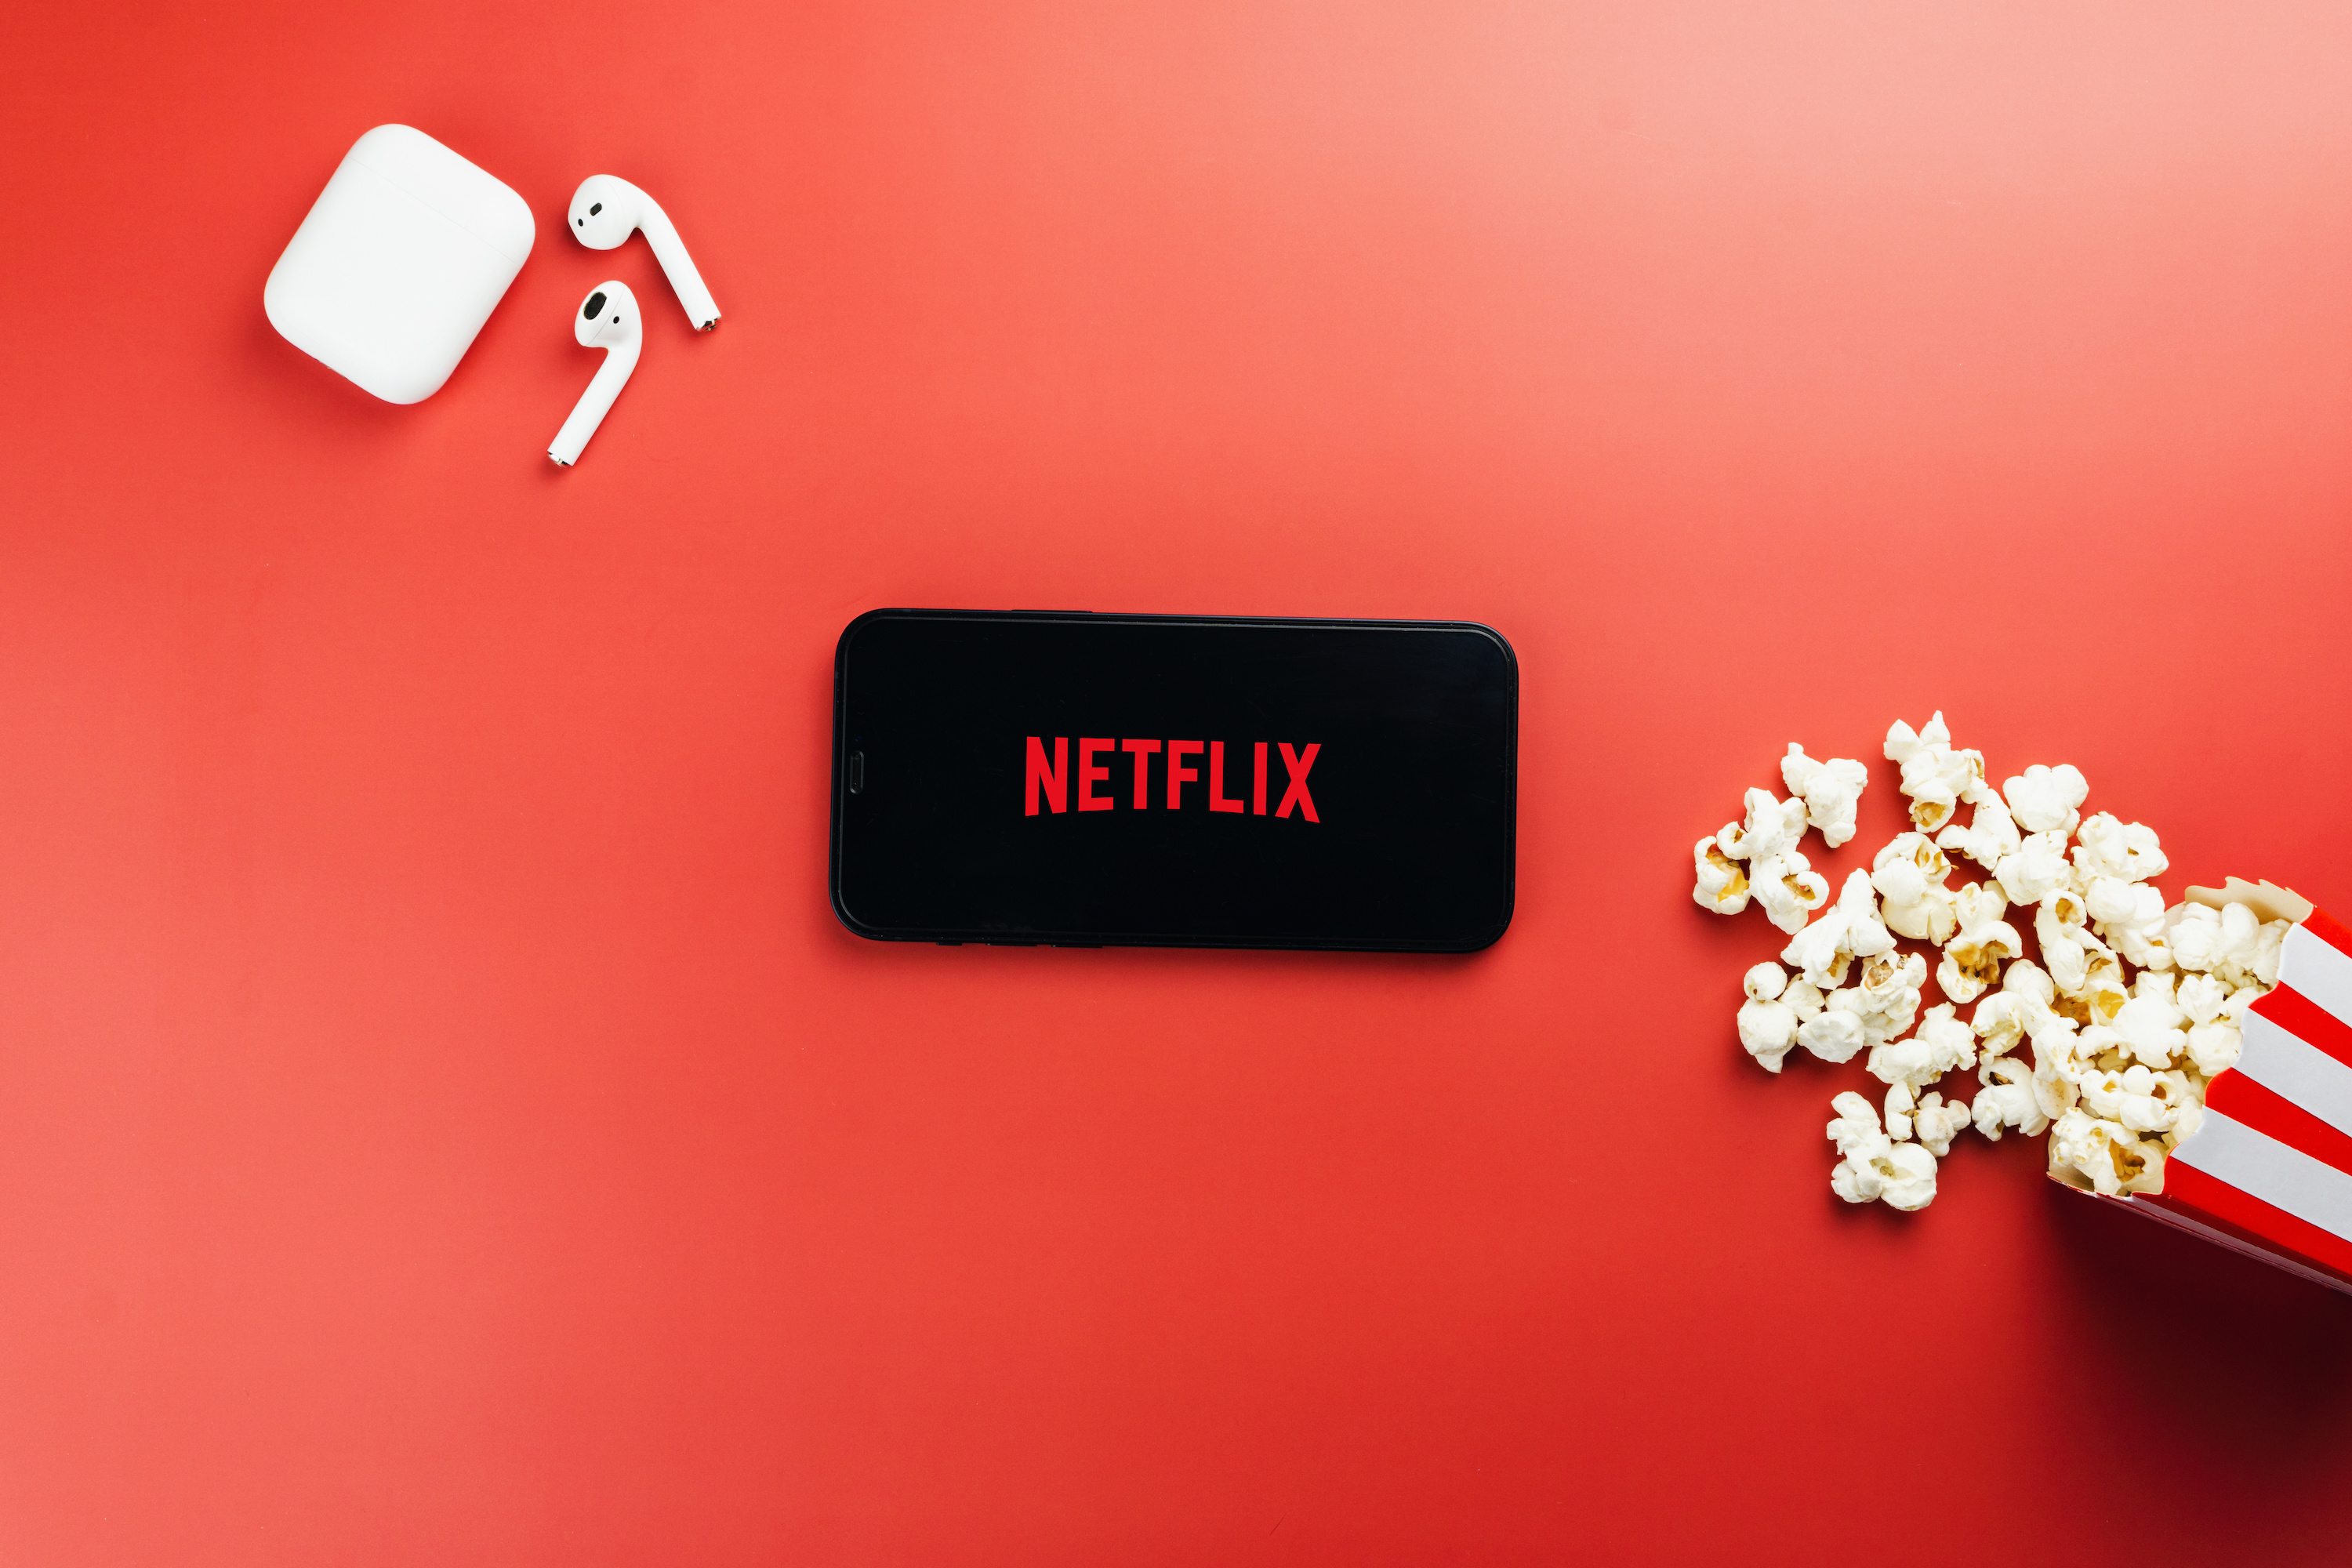 Netflix et partage de compte : peut-on contourner les nouvelles limitations ?